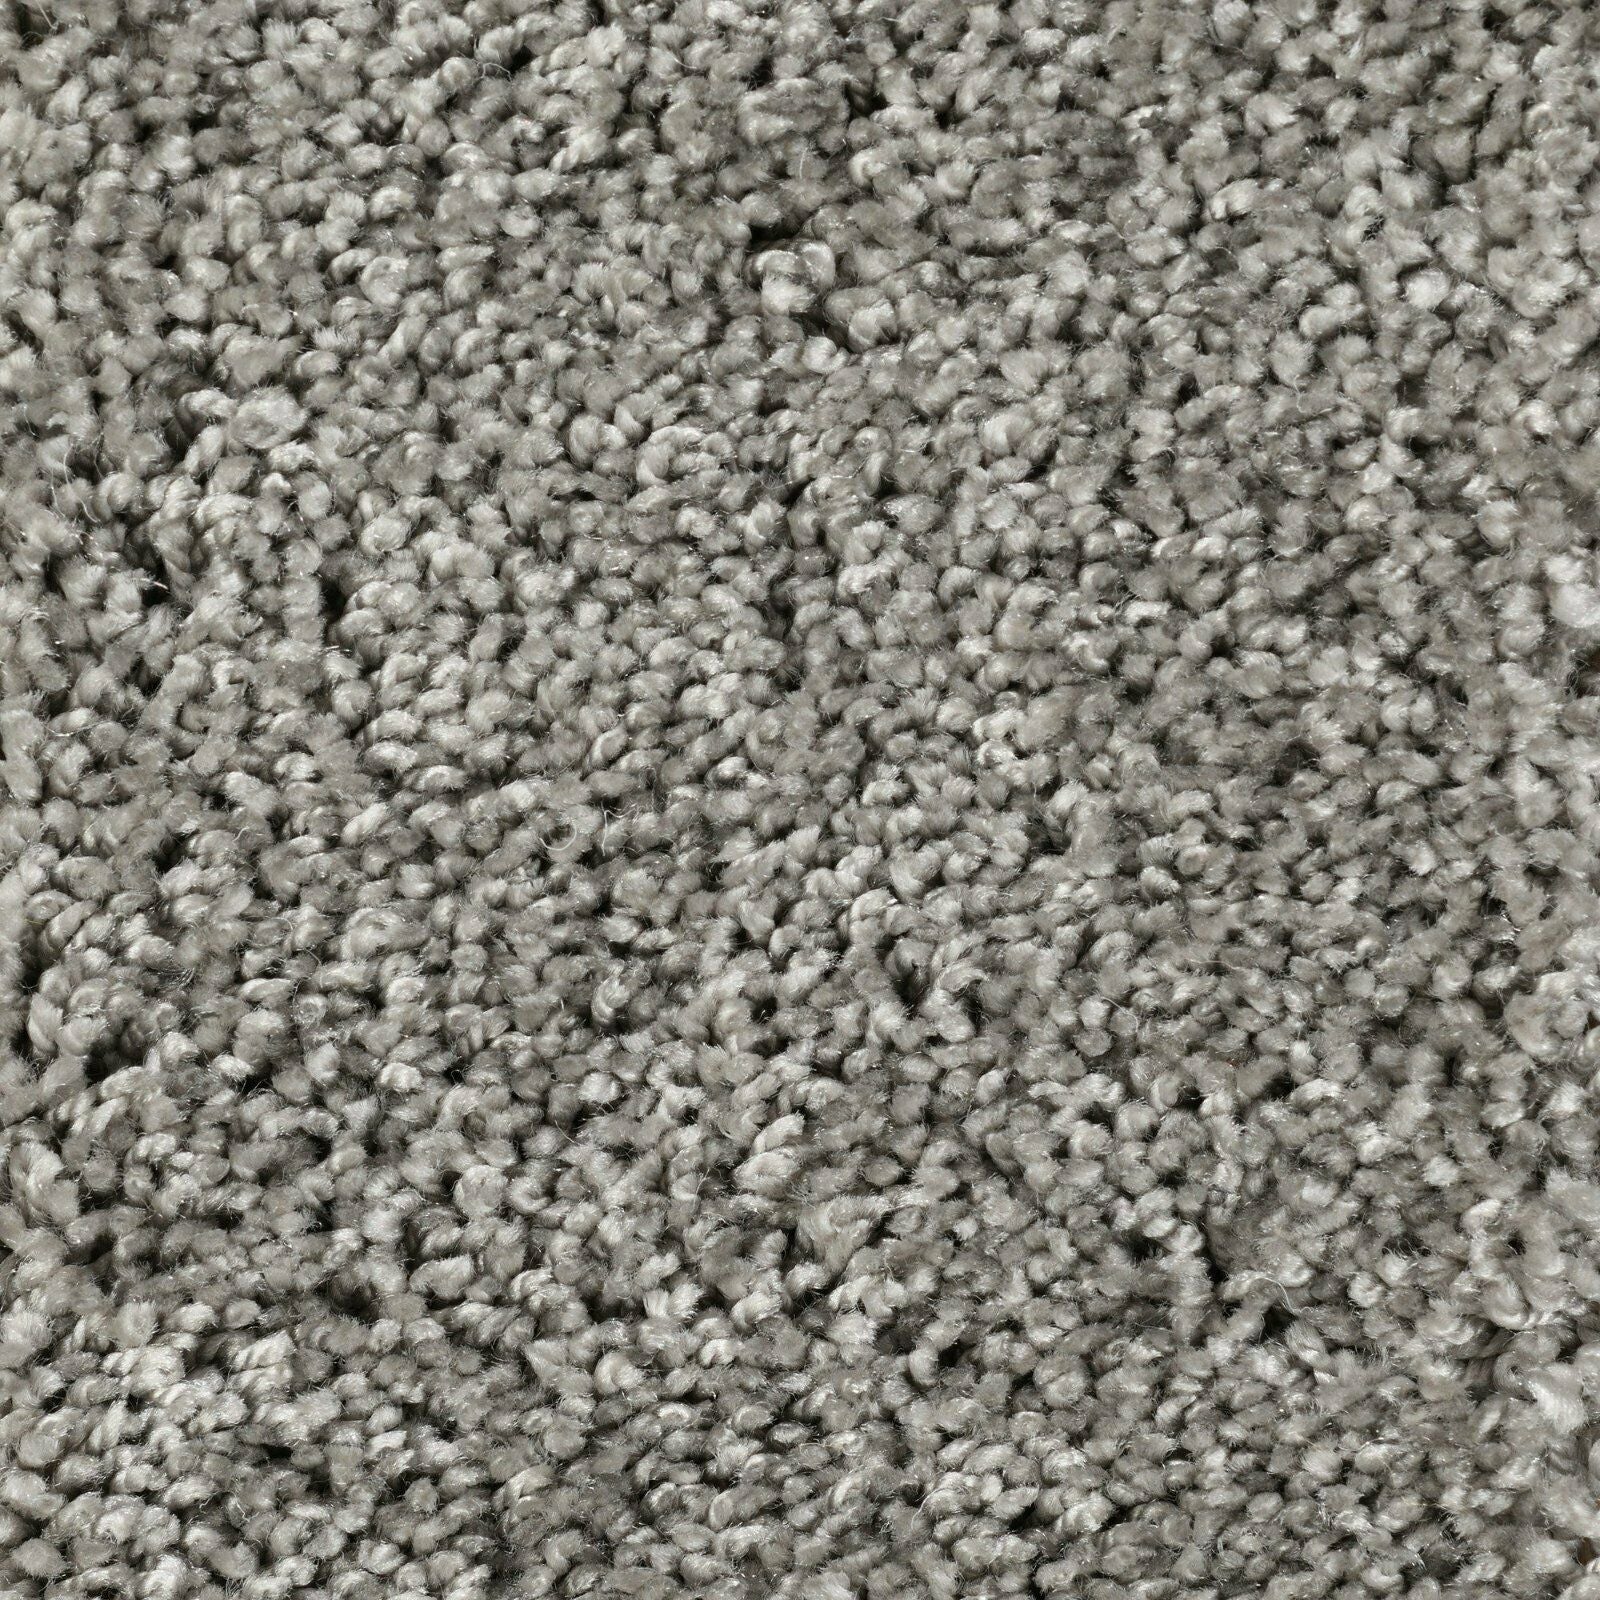  RUGMRZ Teppiche, Dämm- & Schutzmatten 50 x 70 cm Niedriger Samt  Teppich graugrün Minimalist isches Design Moderne Wohnzimmer Dekoration  rutsch fest Teppich Für Esszimmer